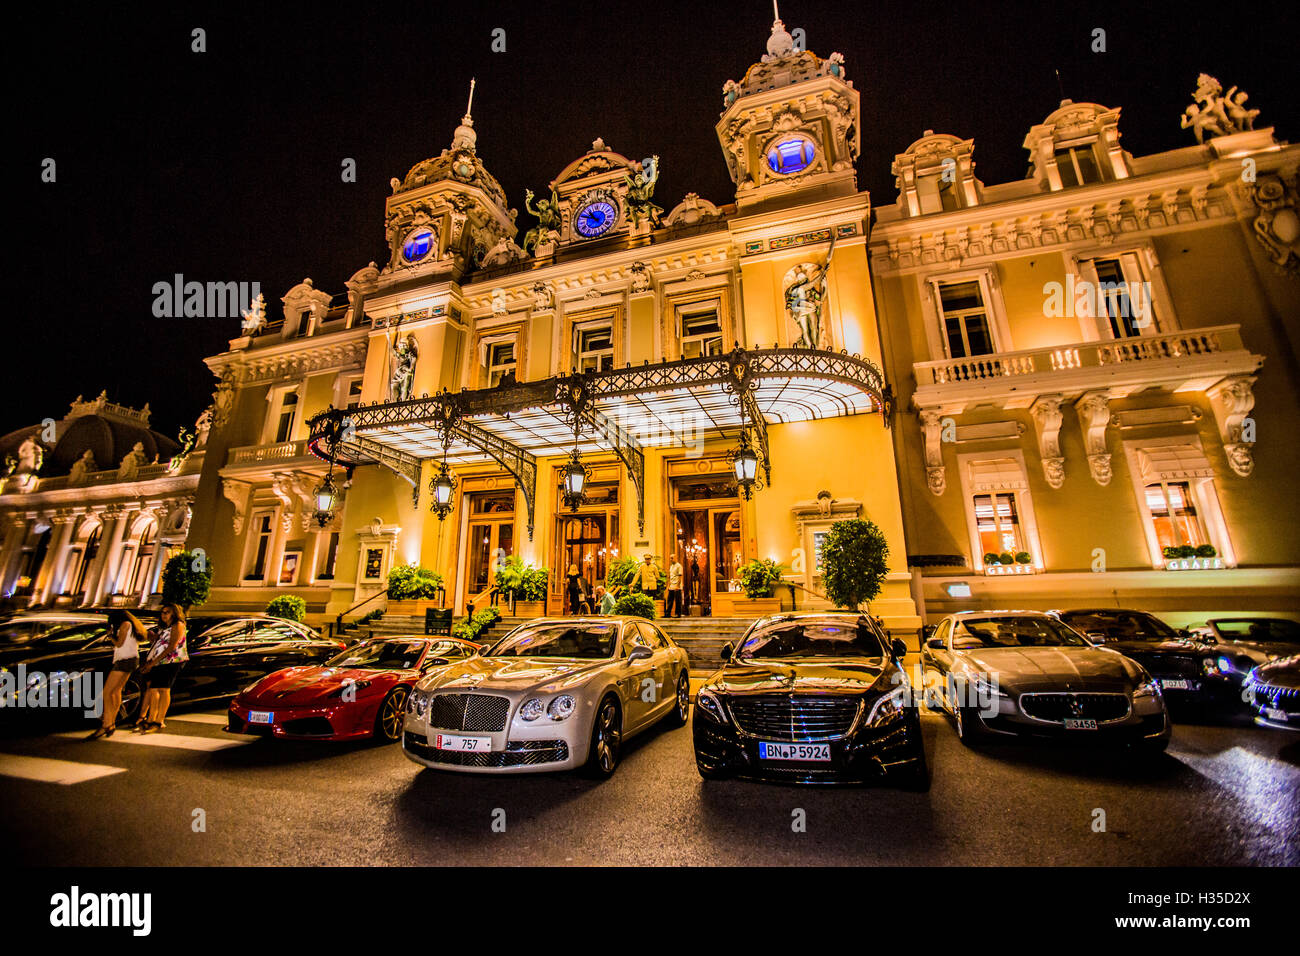 Casino at night, Monaco, Europe Stock Photo